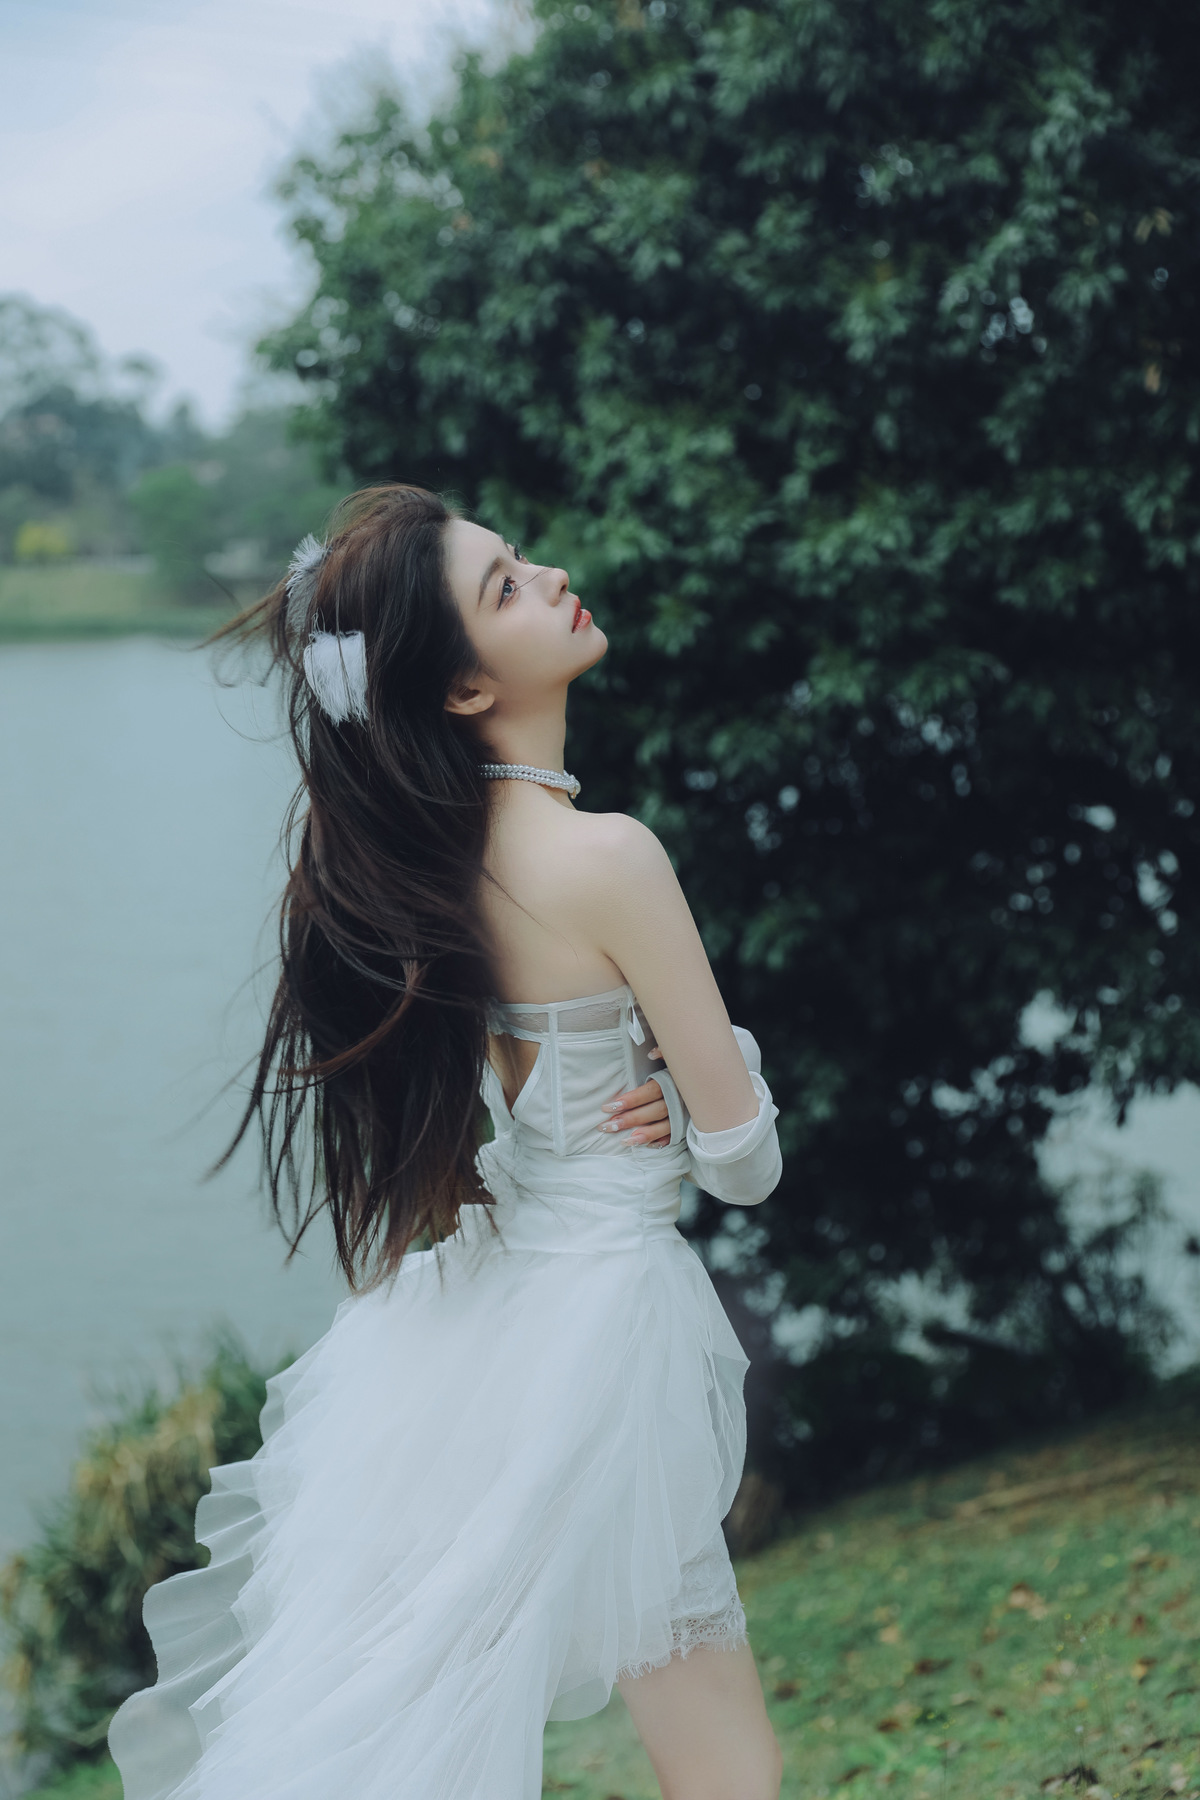 一位穿着白色连衣裙的年轻女子站在湖边草地上 背景中有树木和水。